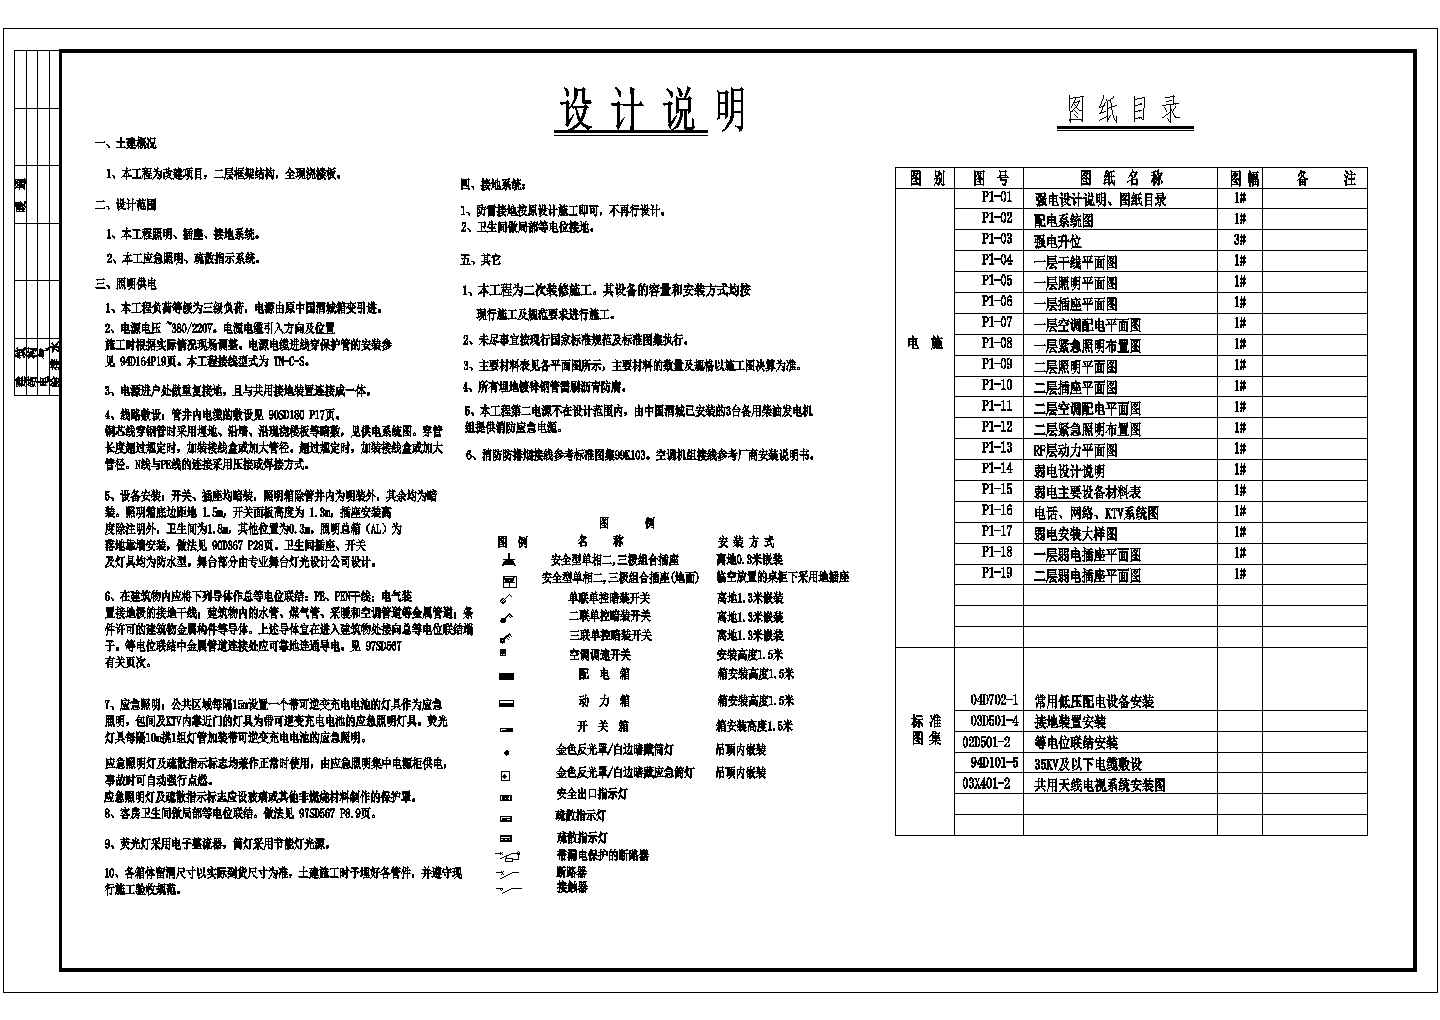 中国会所歌剧院电气施工设计方案全套图纸